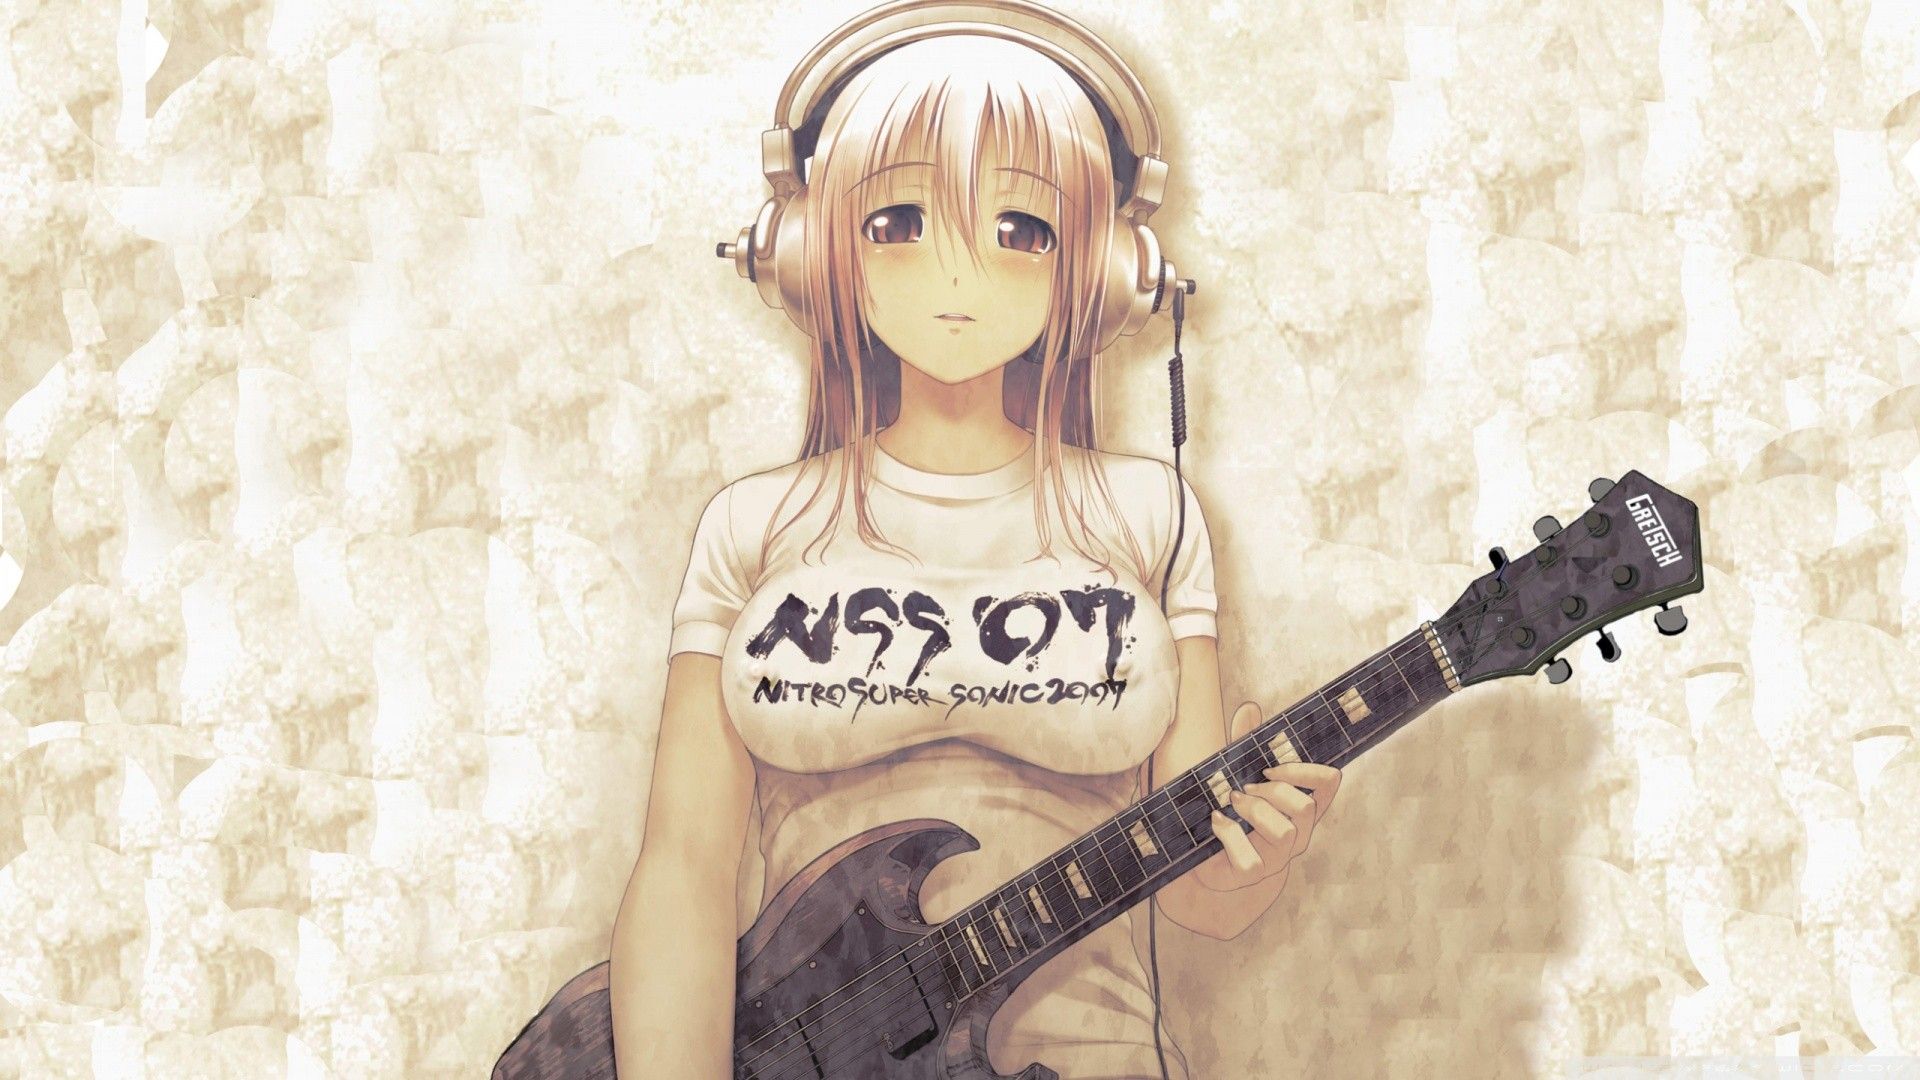 #guitar, #anime girls, #anime, #women, wallpaper. Anime